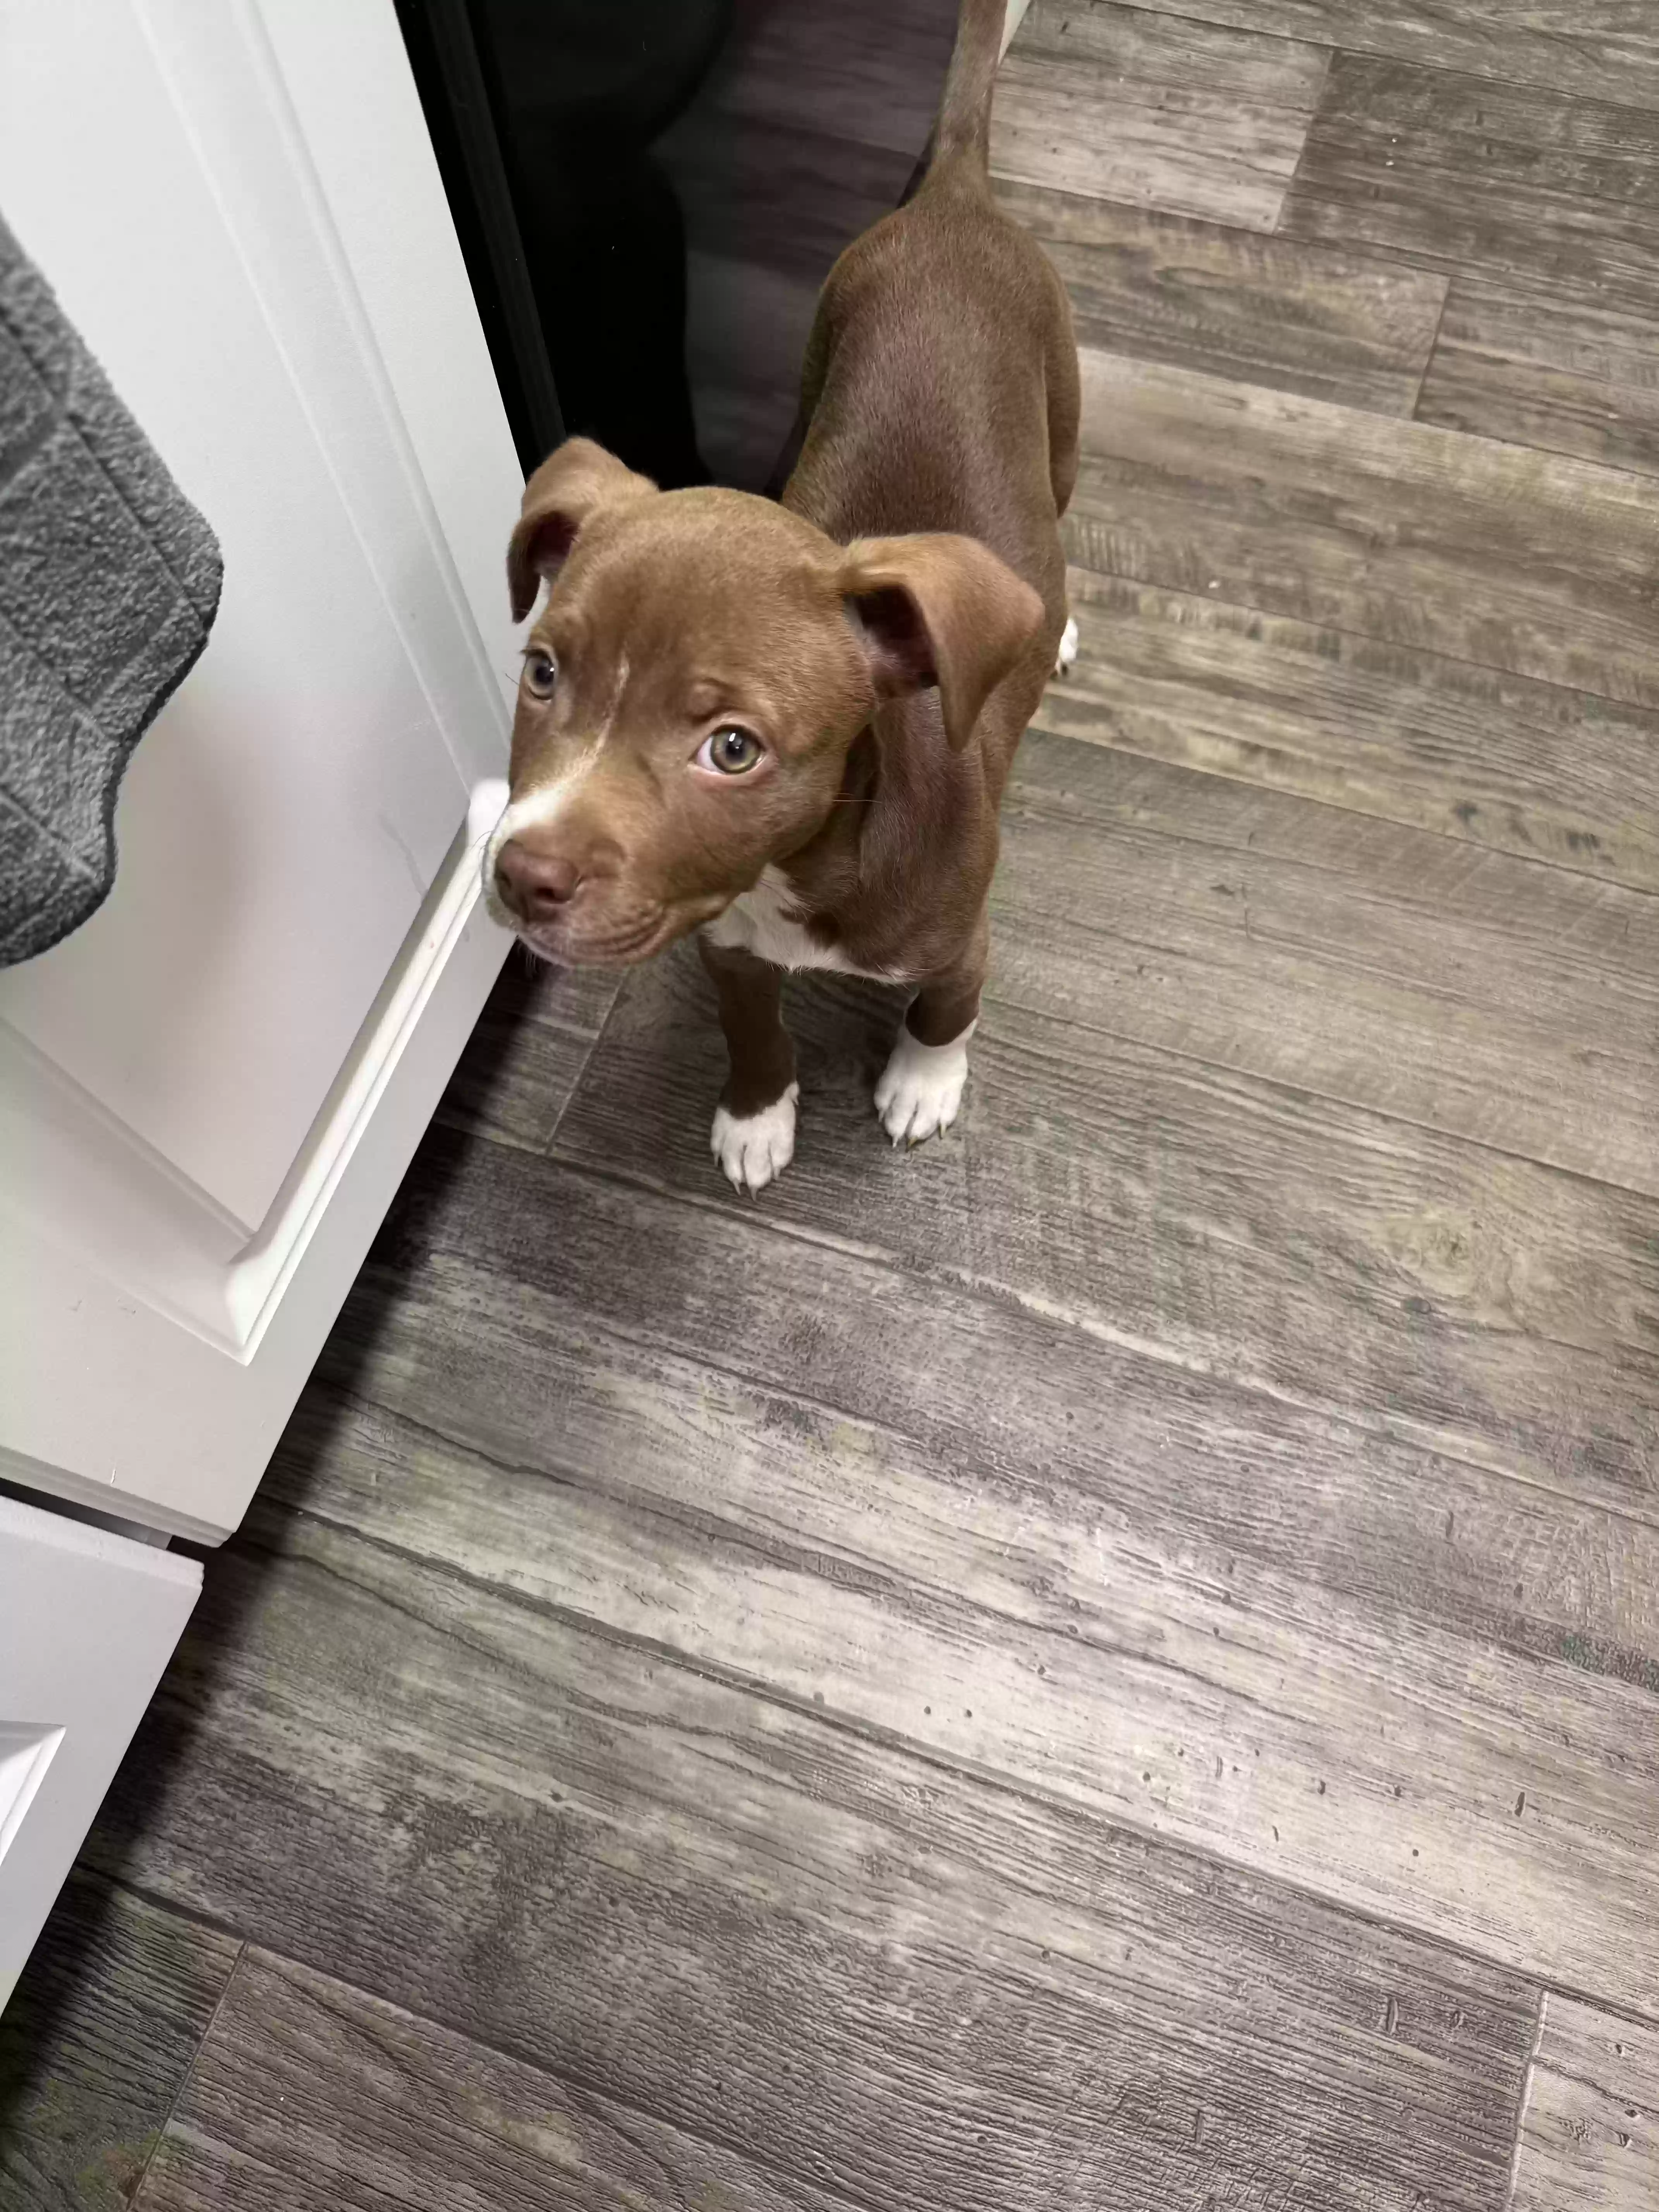 adoptable Dog in Orlando,FL named Zoey